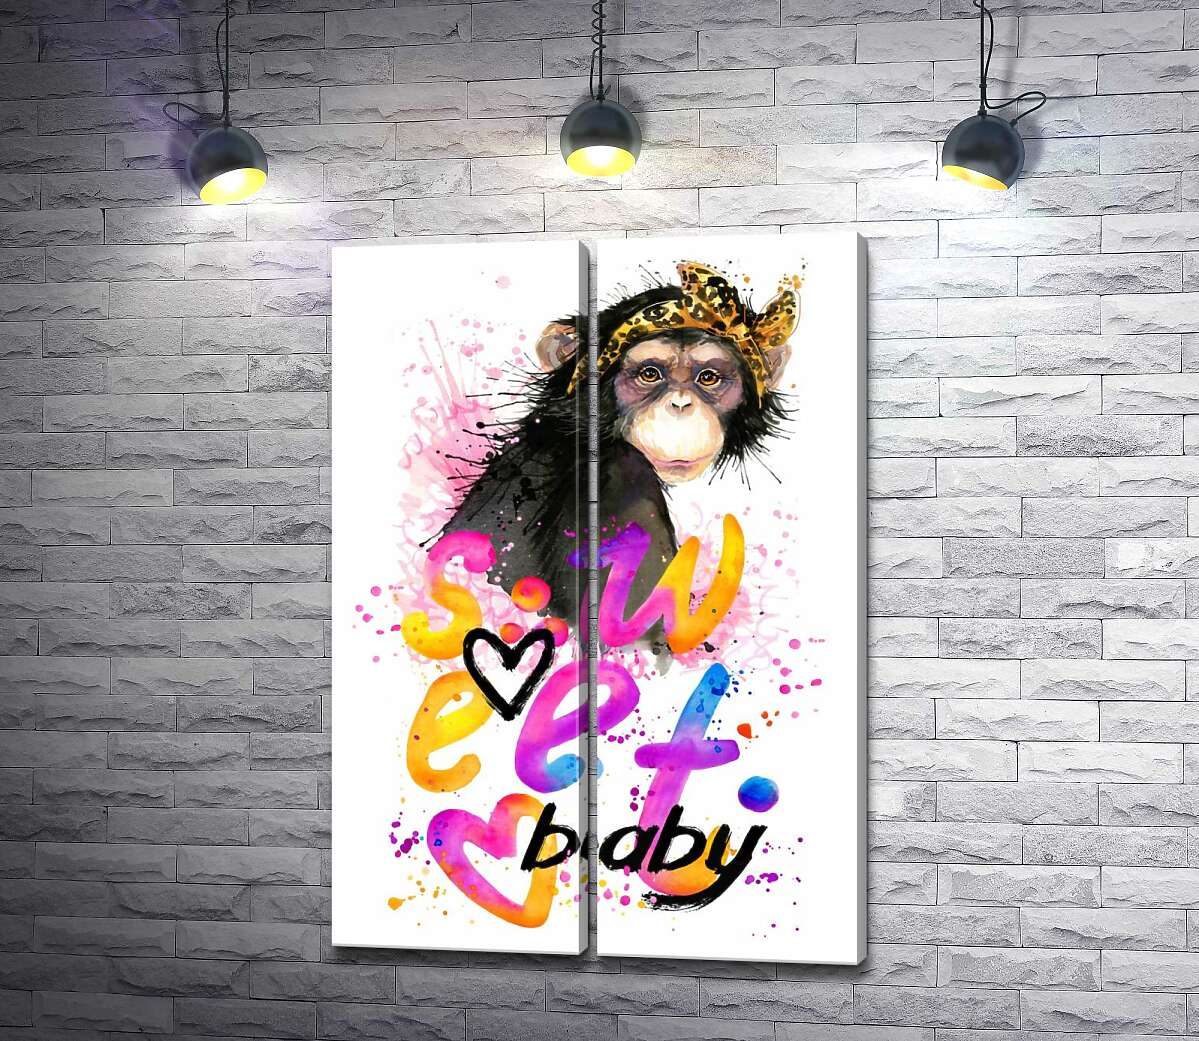 модульна картина Модна мавпа сидить над написом "sweet baby"